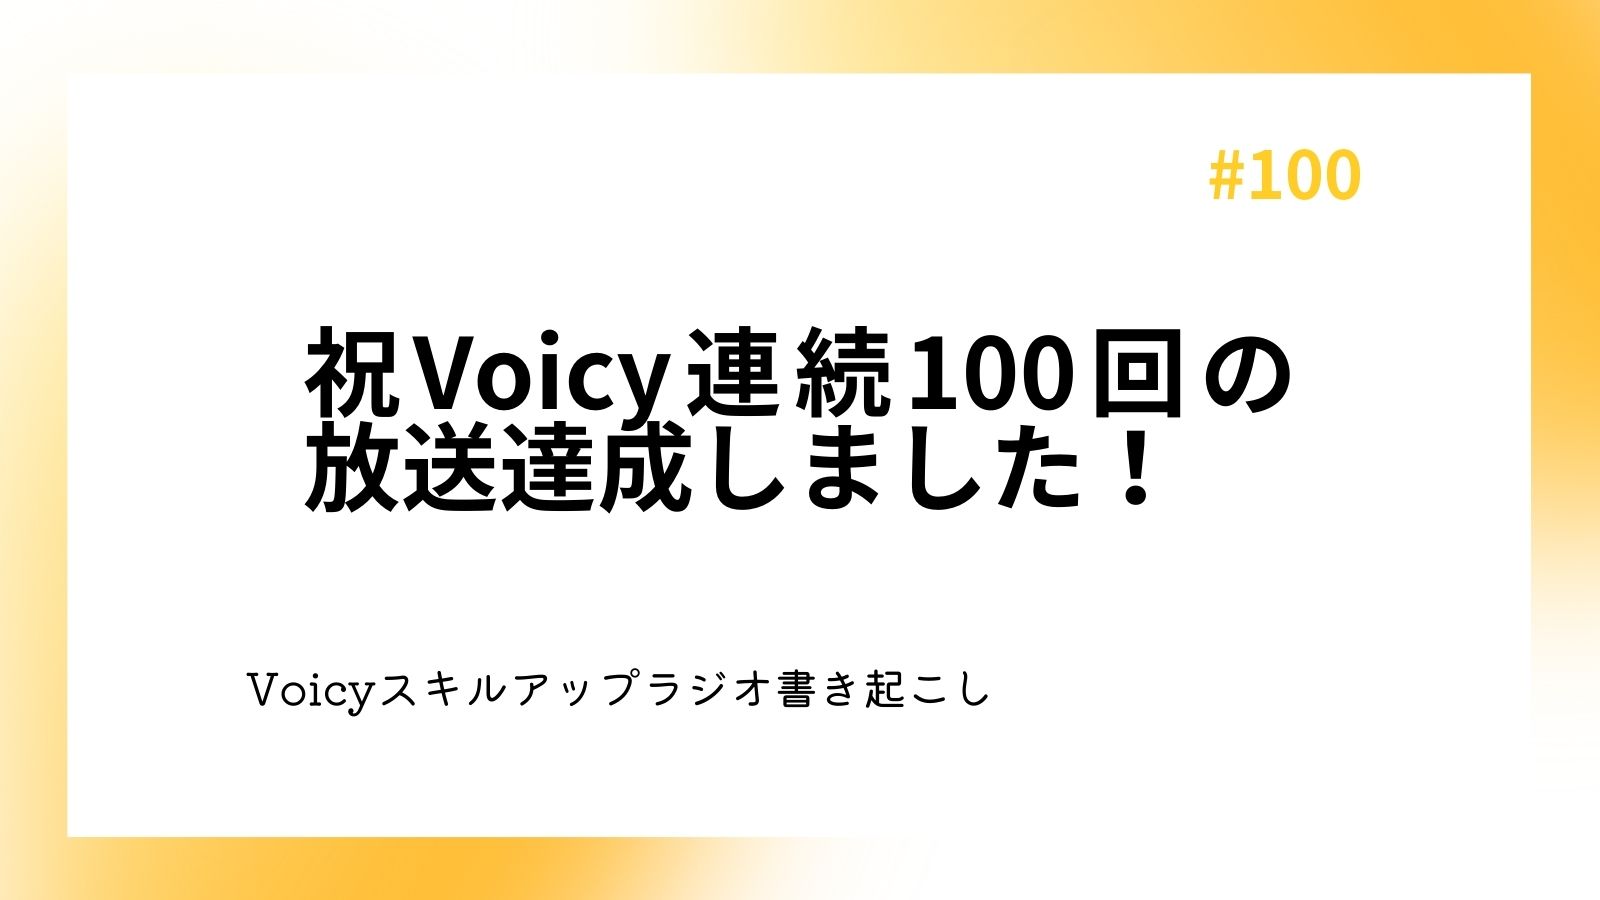 祝Voicy連続100回の放送達成しました！